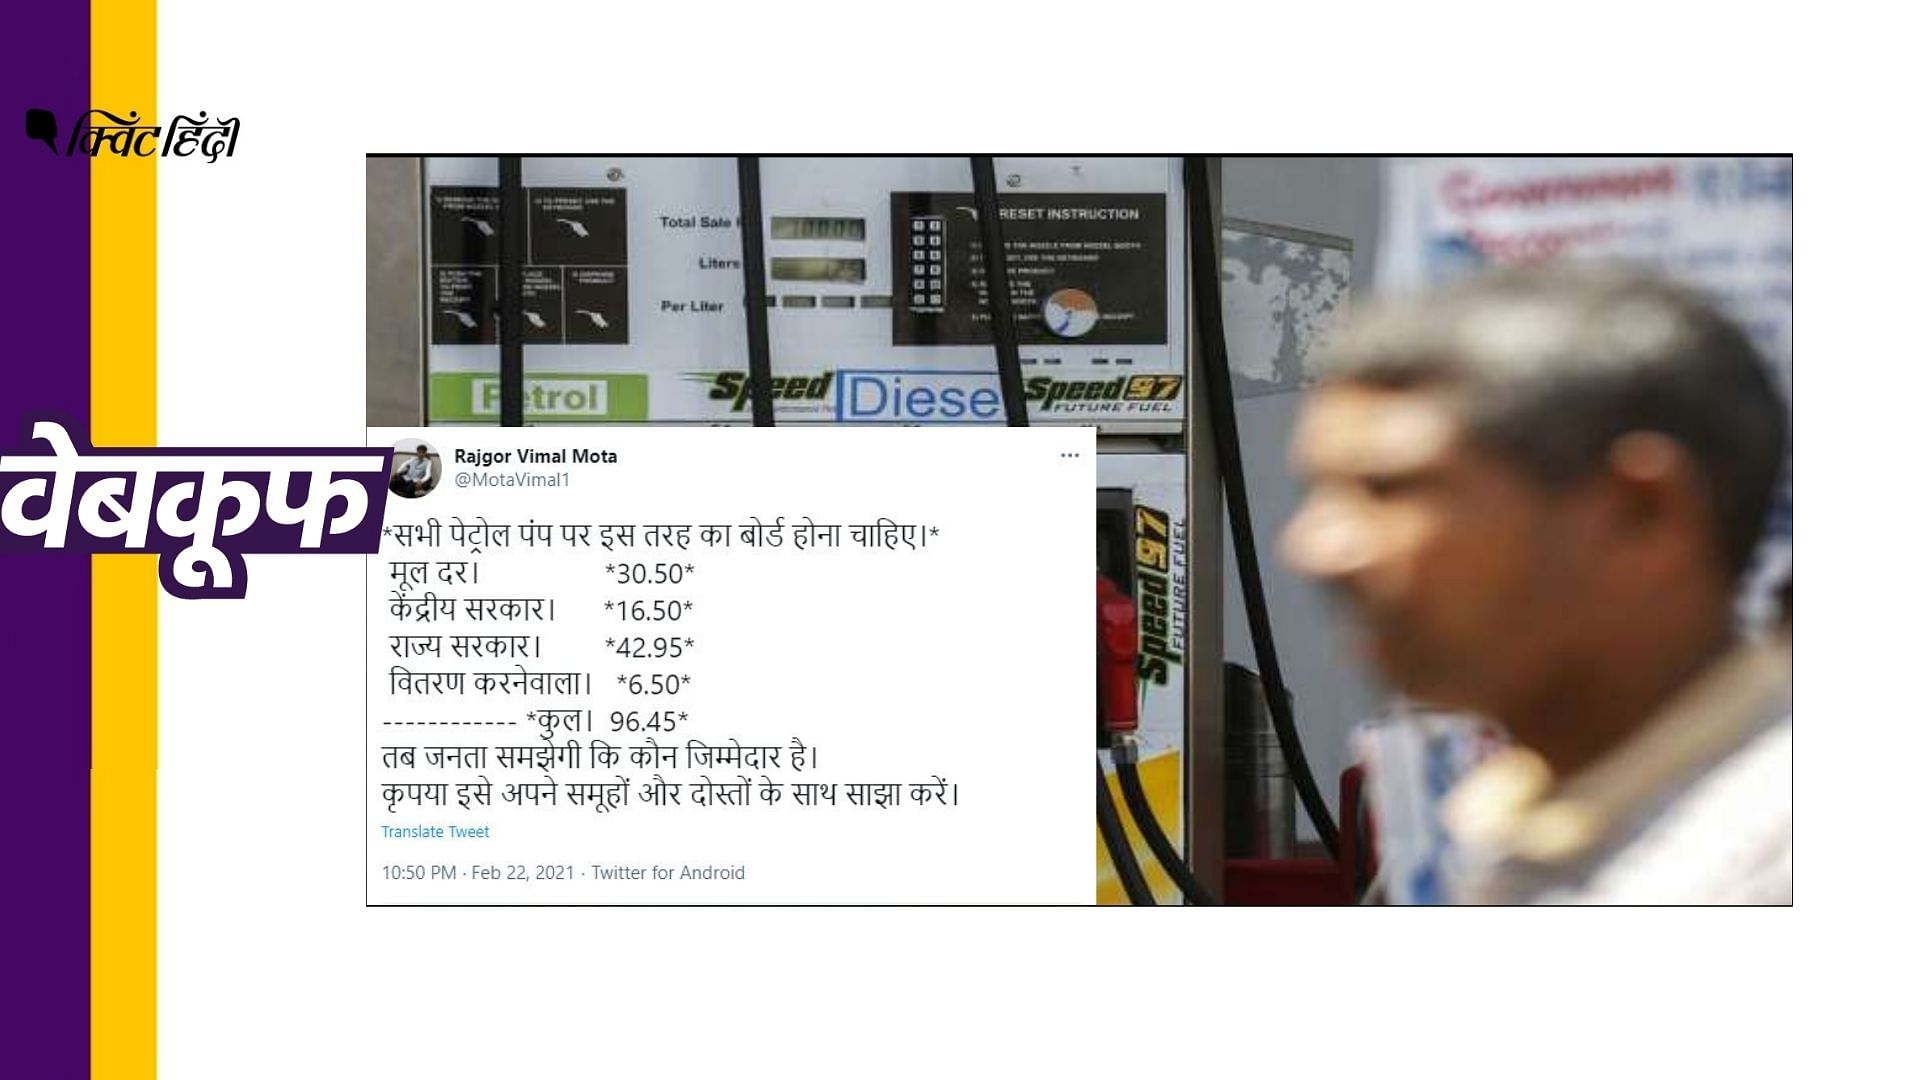 दावा किया जा रहा है कि केंद्र सरकार 1 लीटर पेट्रोल पर सिर्फ 16.50 रुपए टैक्स ले रही है